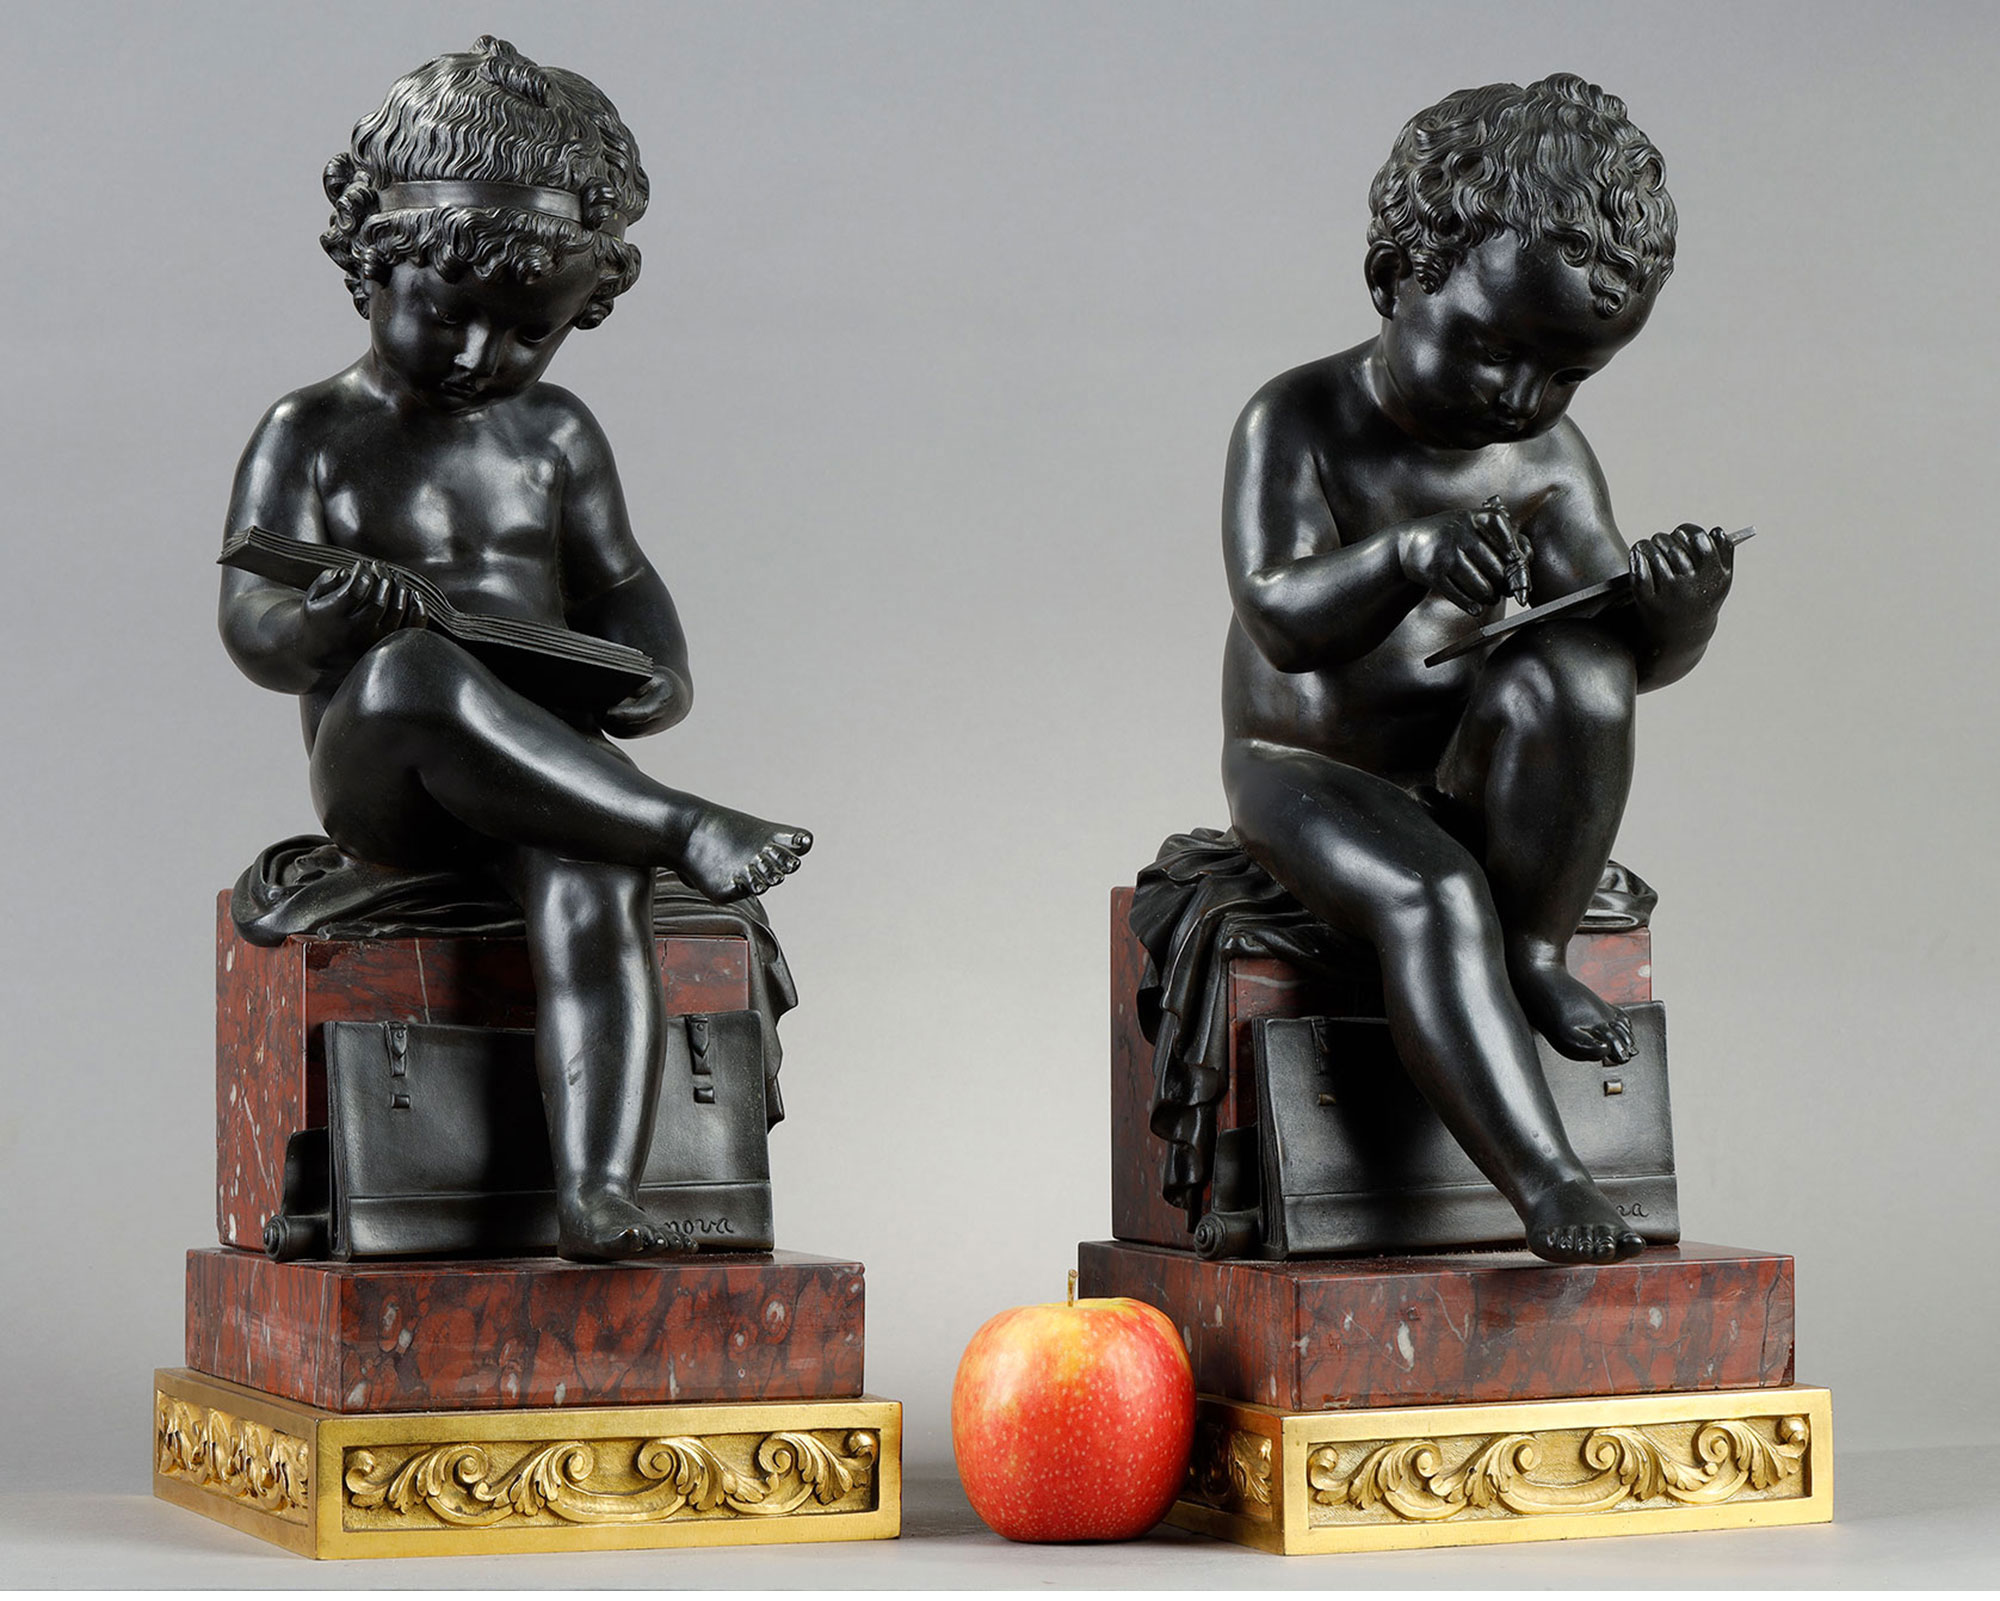 独角鹿西洋古董1900年代意大利出品铜鎏金大理石底座嵌儿童主题青铜雕塑摆件一对